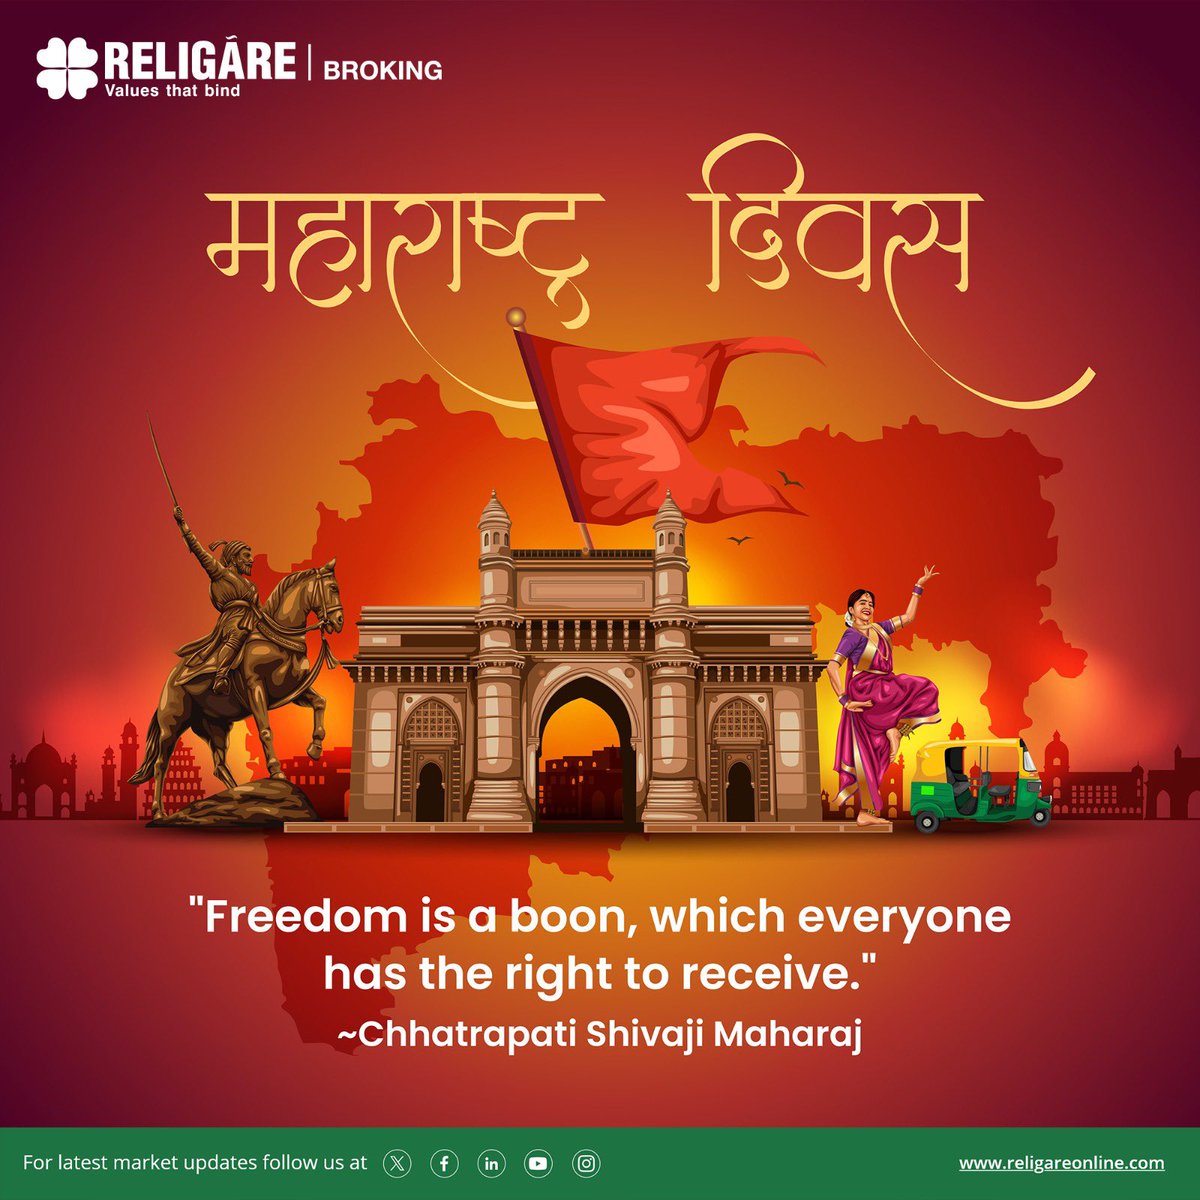 Religare Broking wishes you a Happy Maharashtra Day! 

#MaharashtraDay